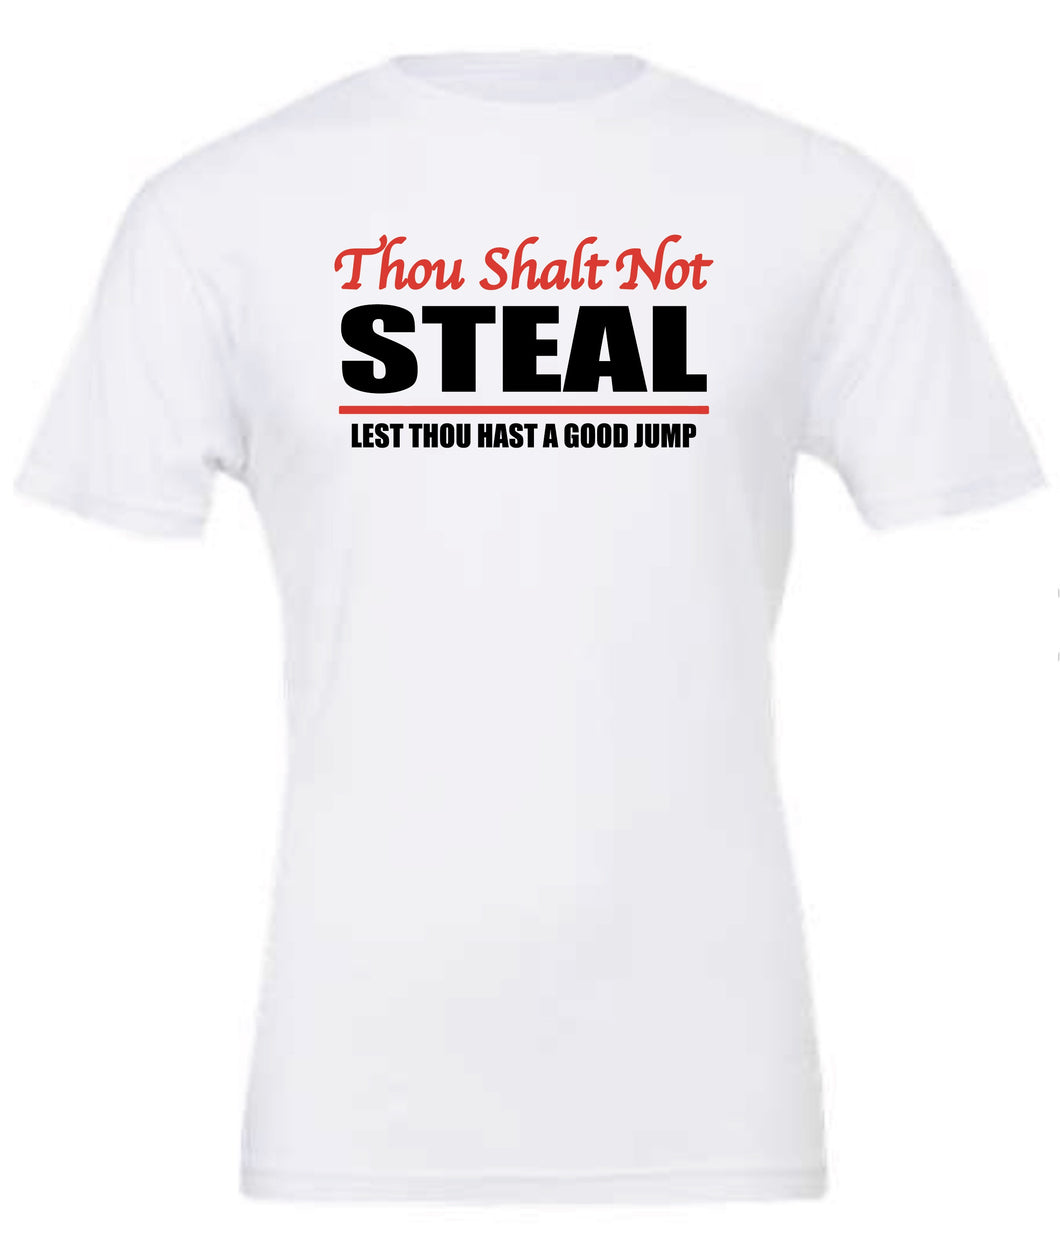 Baseball Steal T-shirt